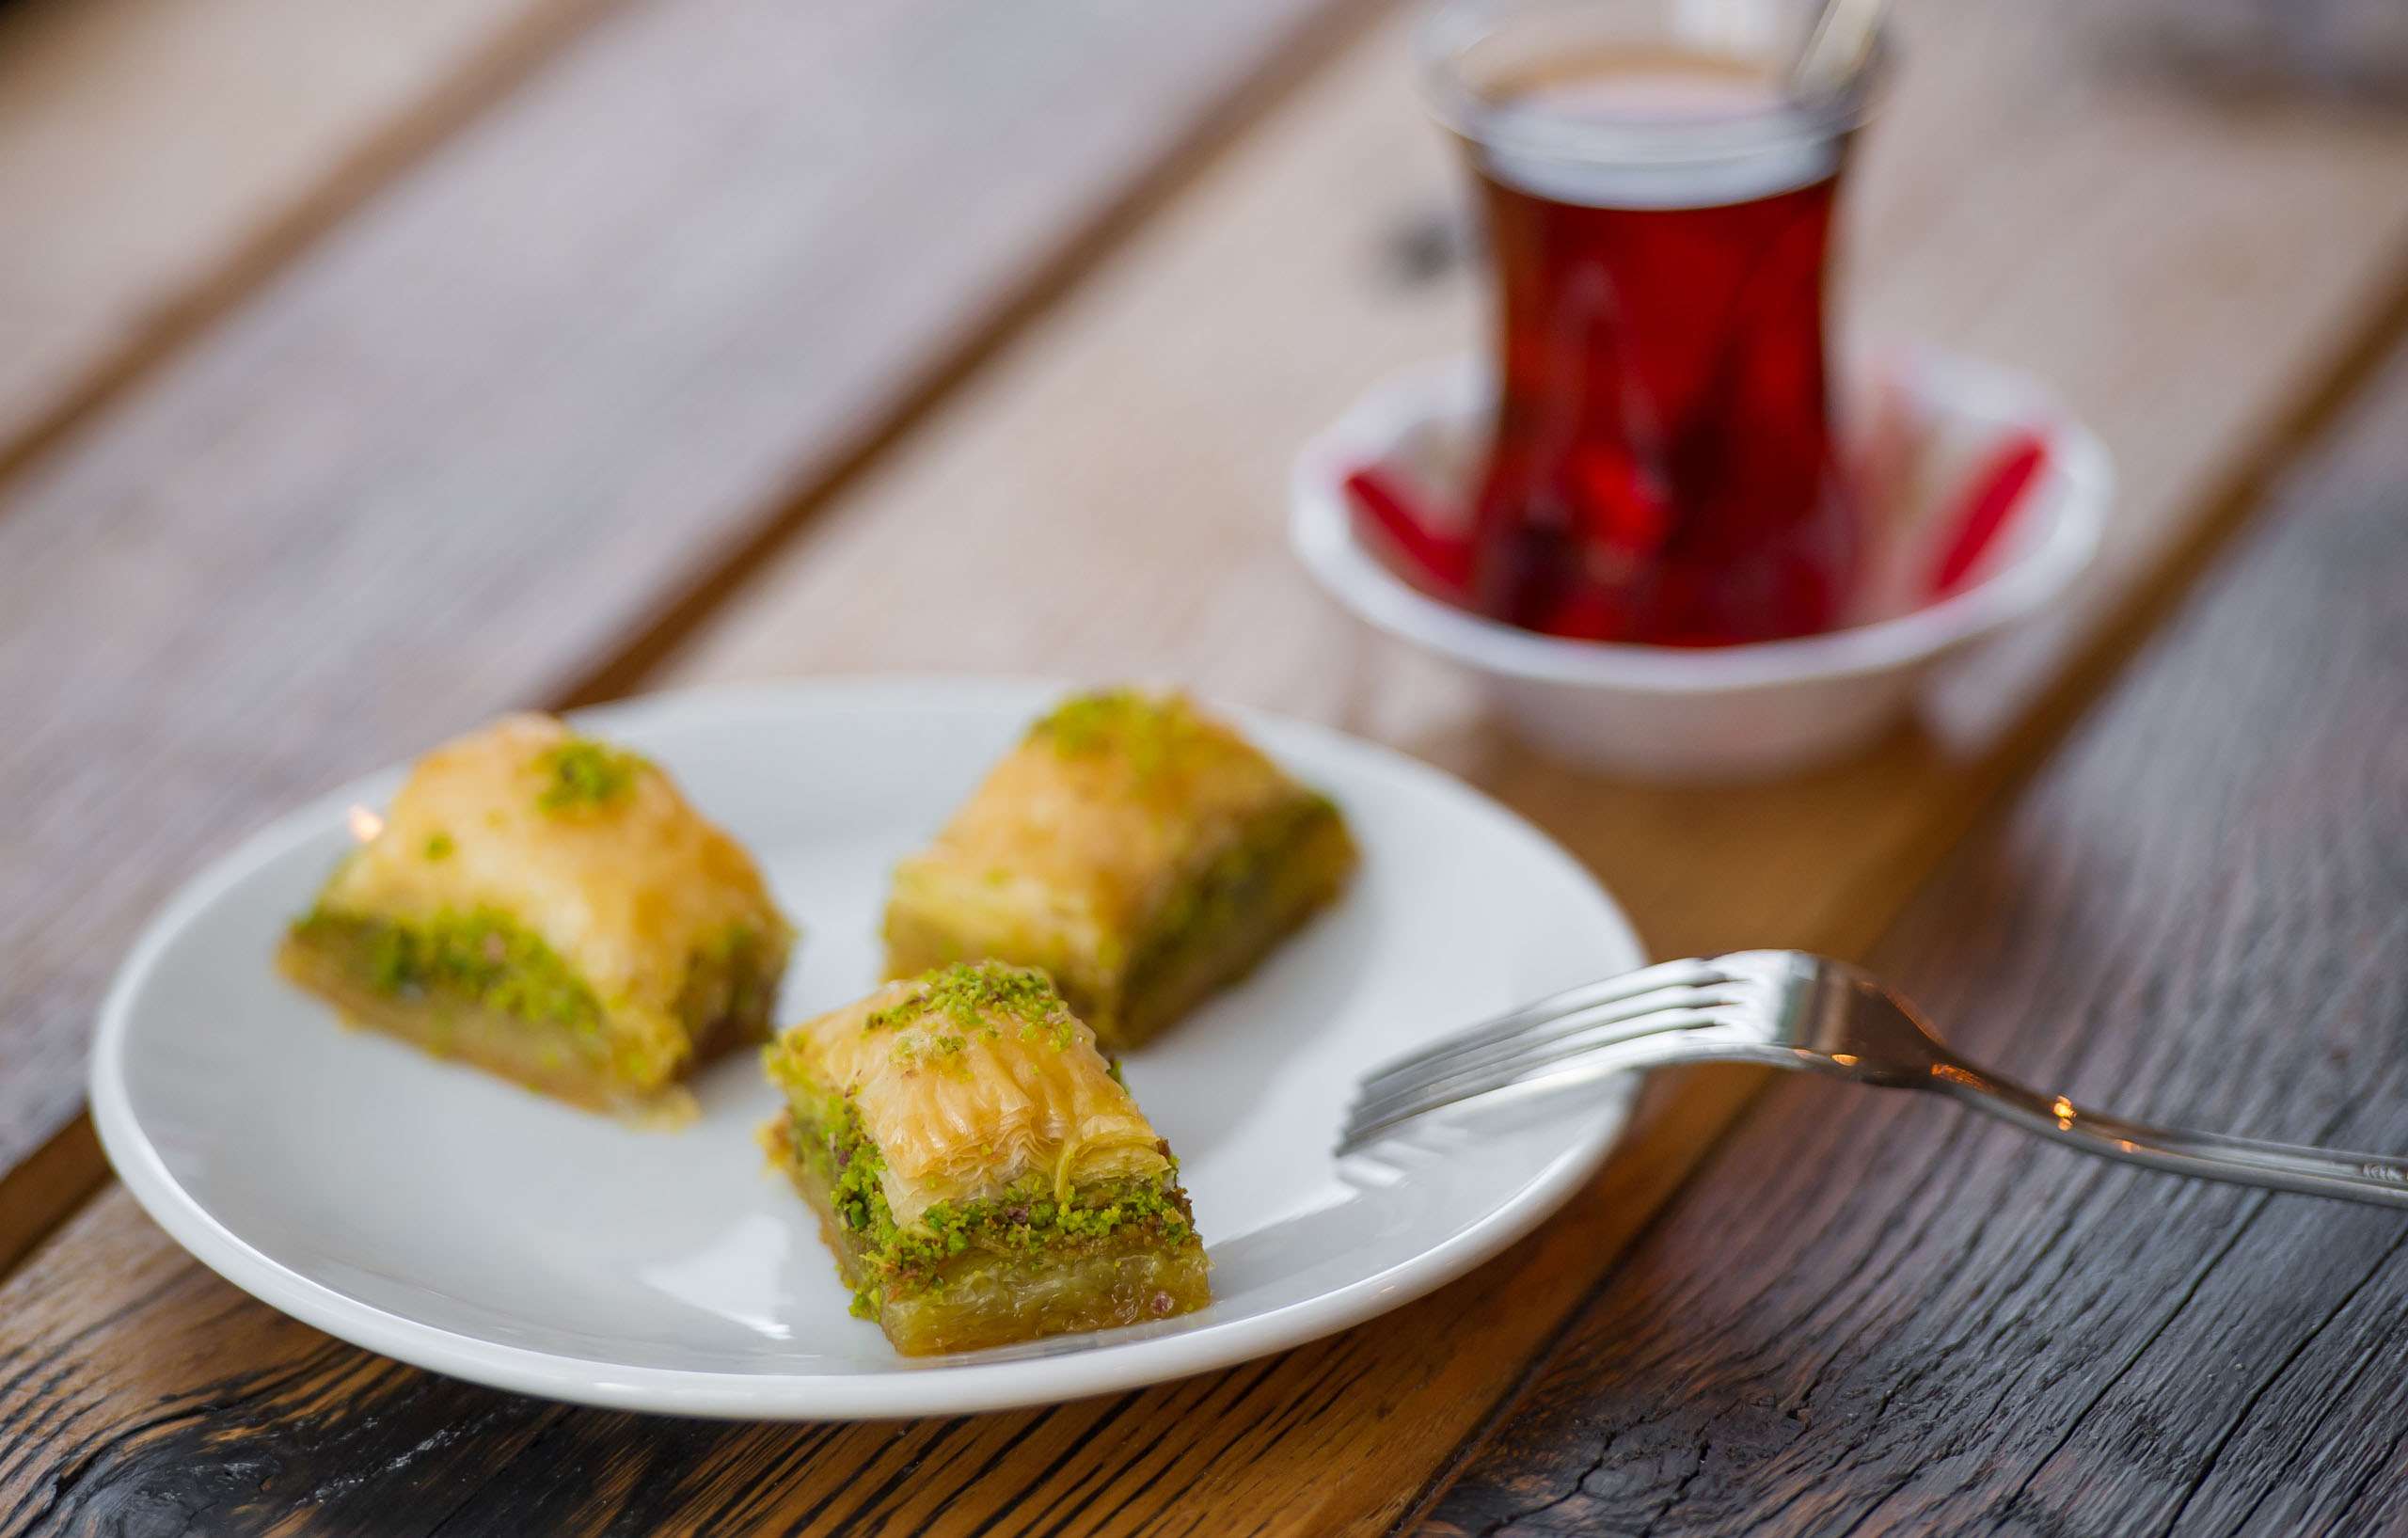 Kervan nổi tiếng với những chiếc bánh truyền thống Thổ Nhĩ Kỳ